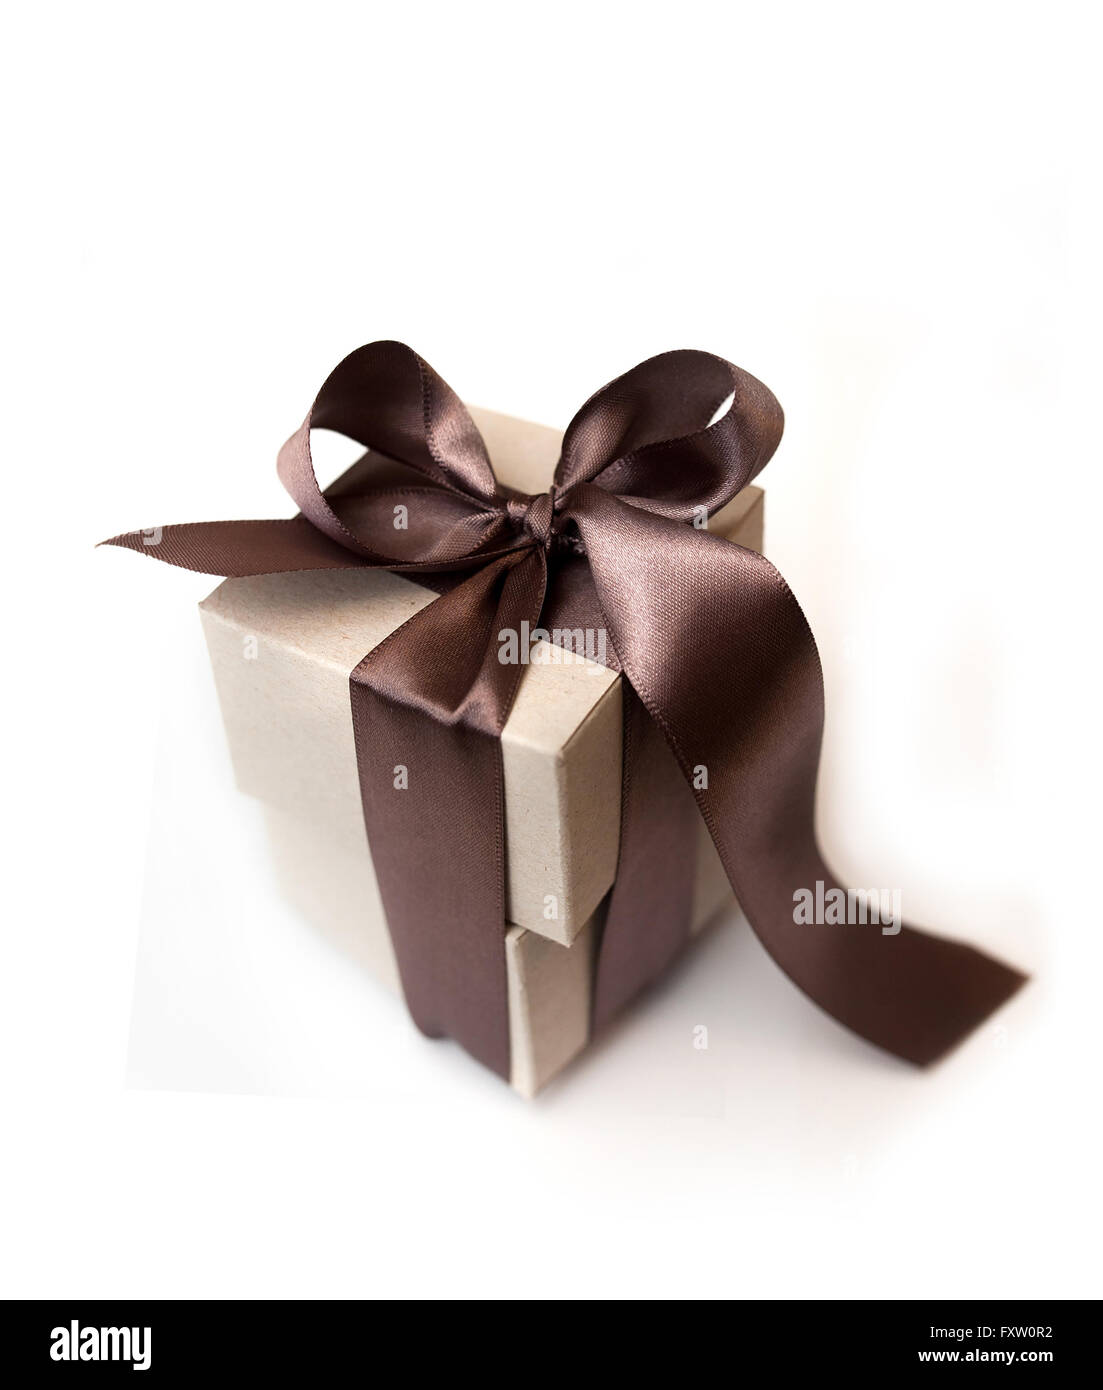 Boîtes cadeaux avec brown bow on a white background Banque D'Images